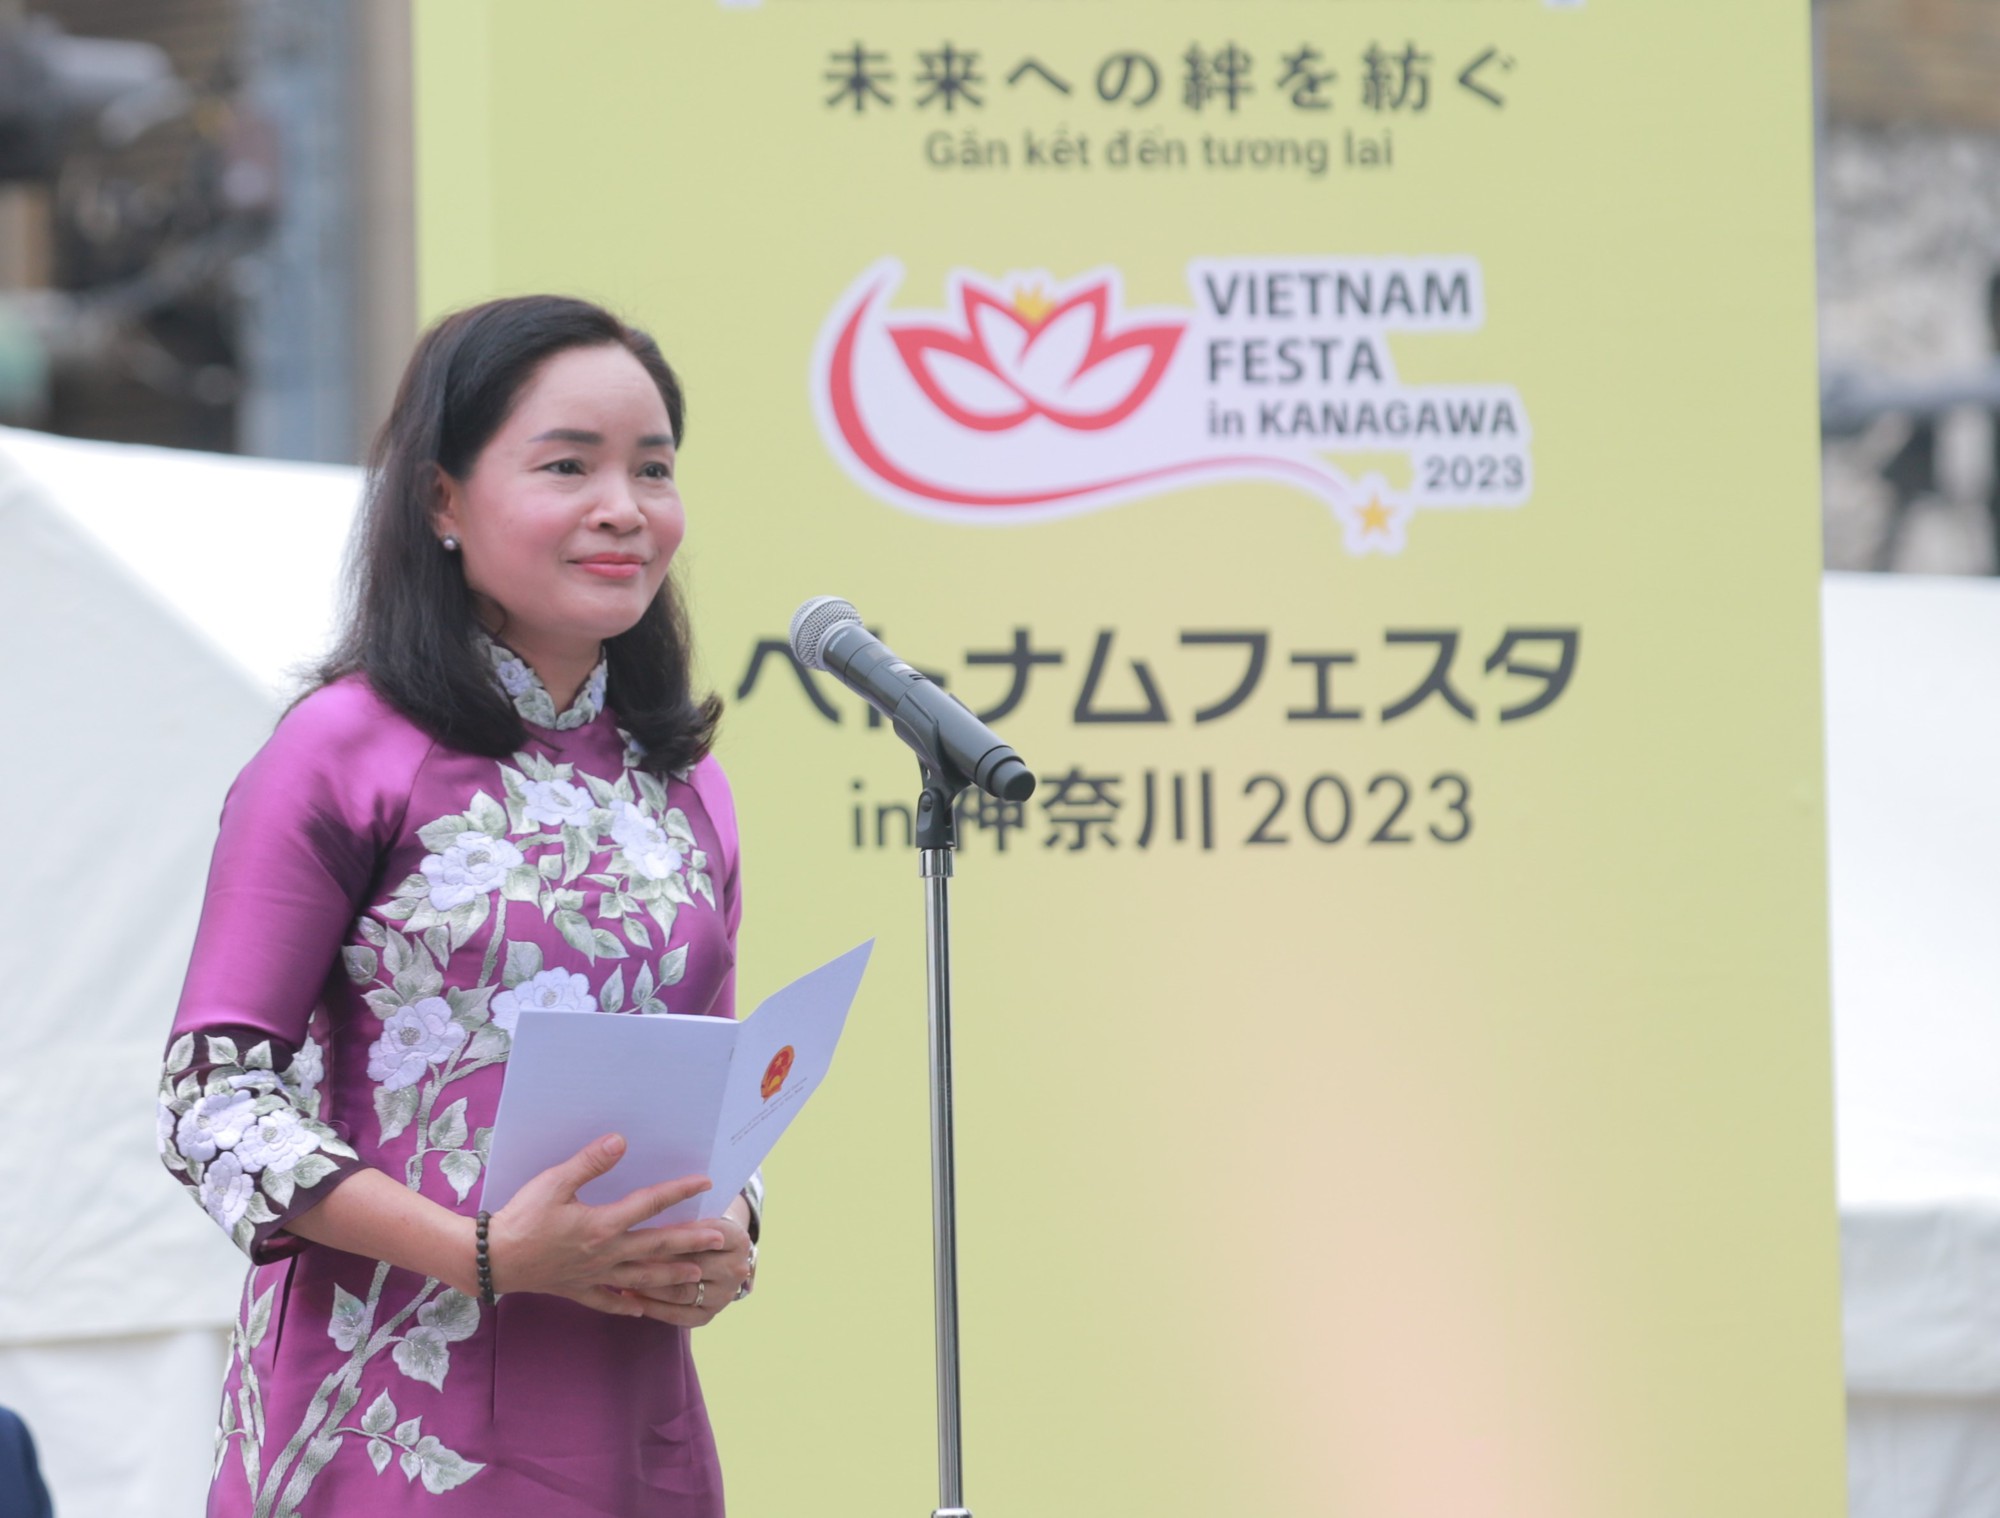 Những ấn tượng đẹp đẽ tại Lễ hội xúc tiến du lịch - văn hóa Việt Nam tại Kanagawa 2023 - Ảnh 10.